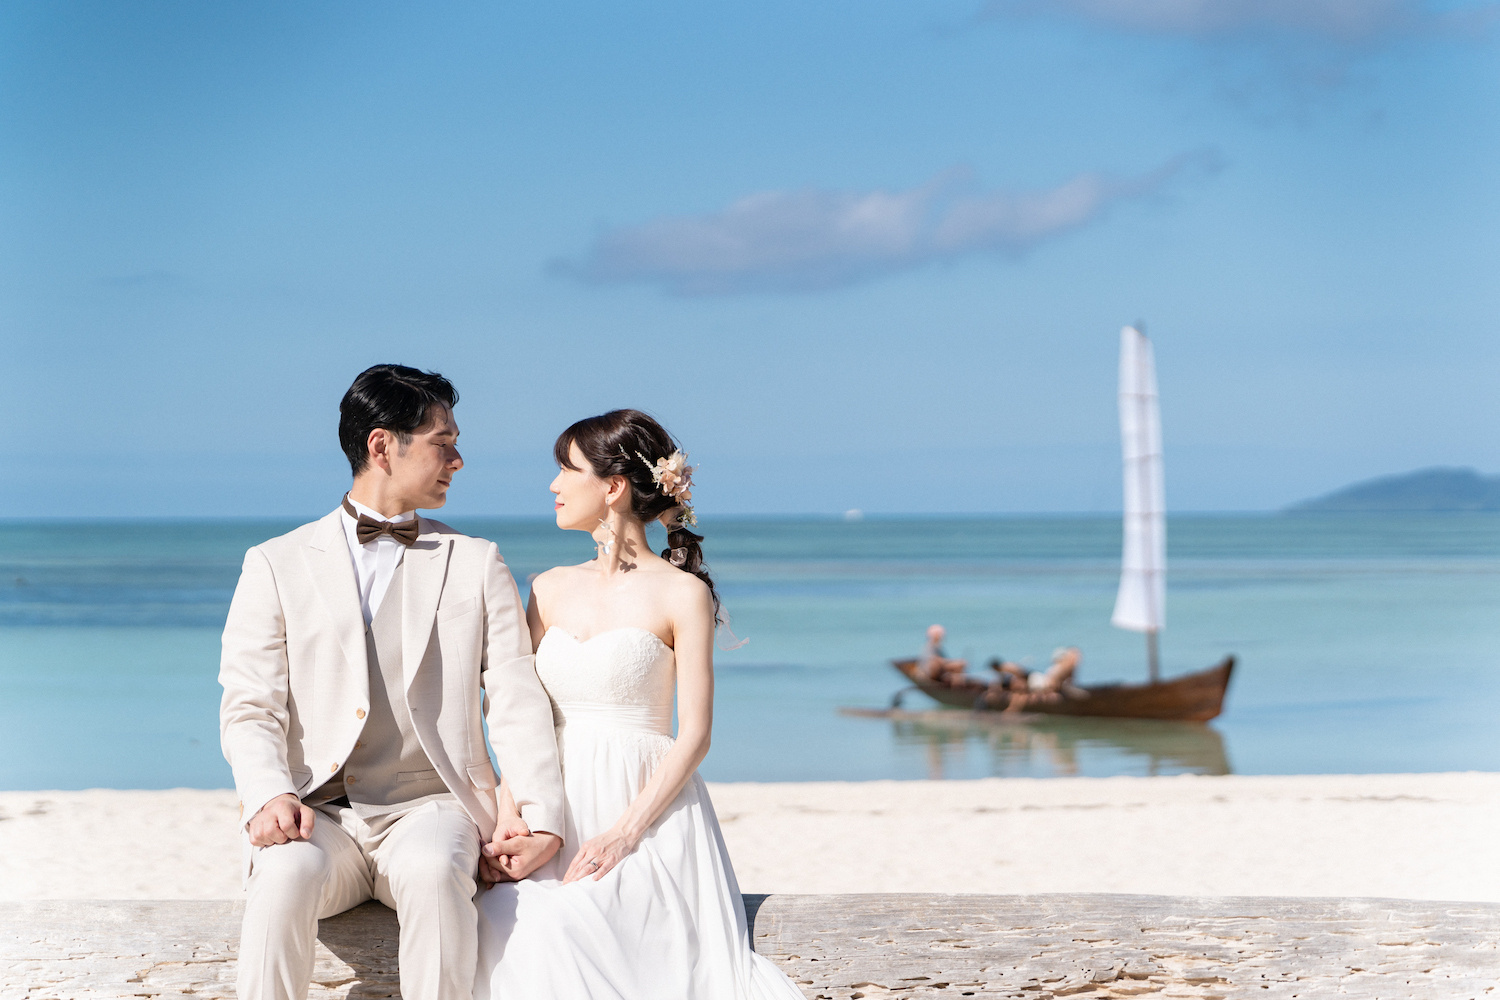 竹富島のコンドイビーチでサバニ船を背景に見つめ合う新郎新婦